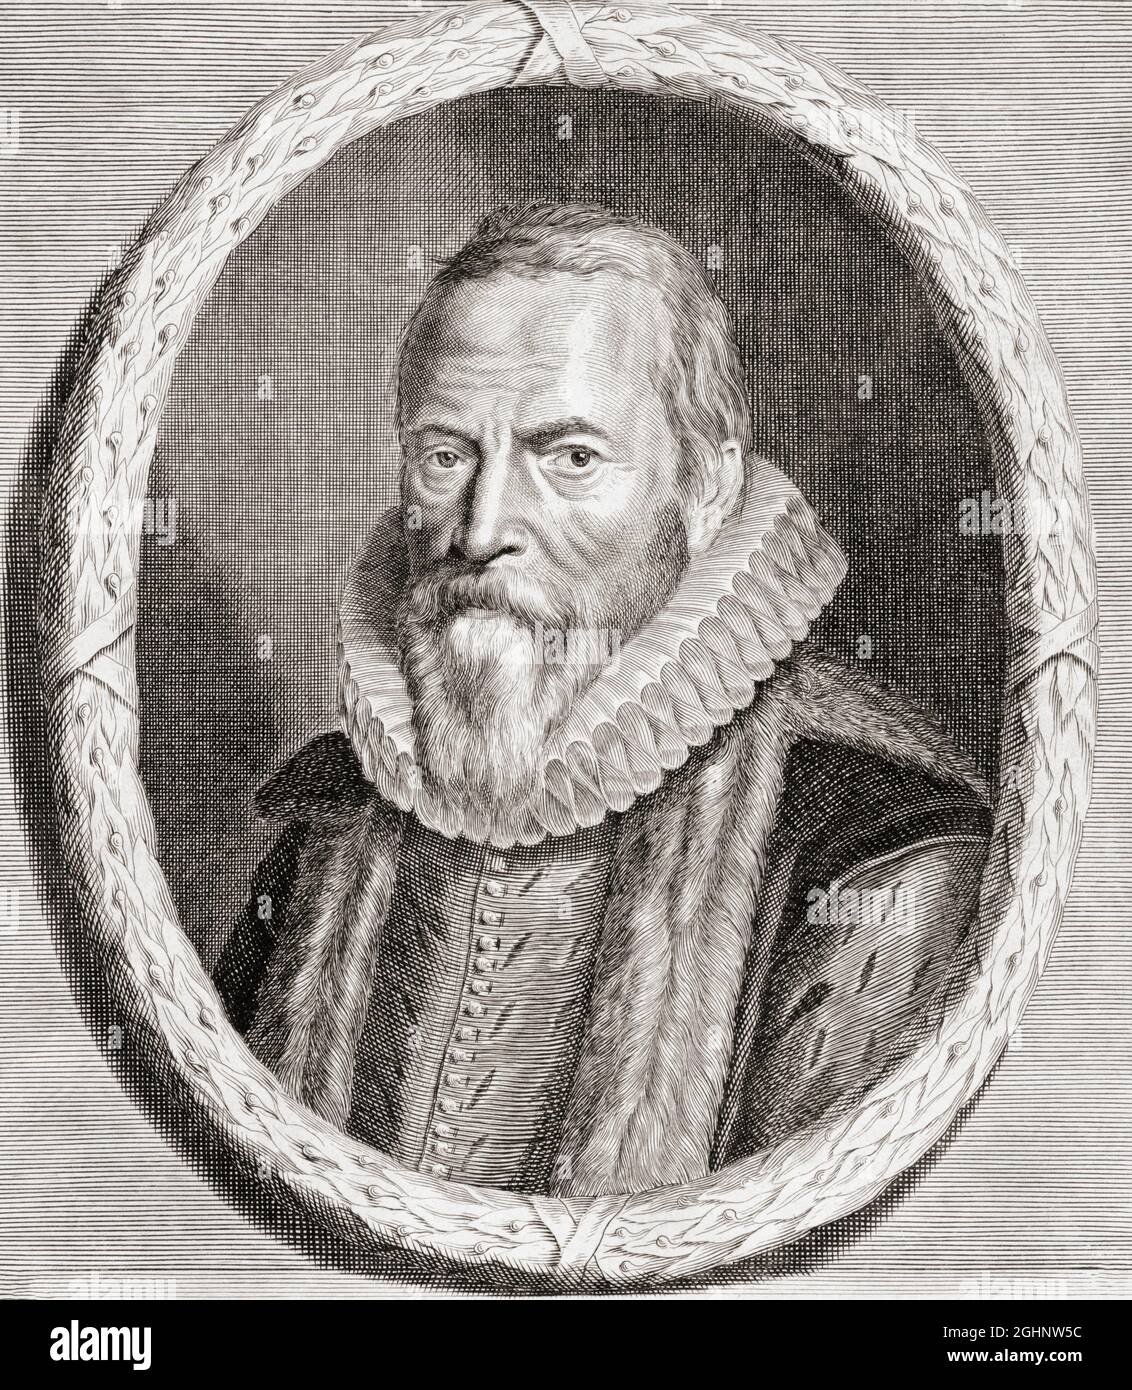 Johan van Oldenbarnevelt, 1547 – 1619. Niederländischer Staatsmann, der eine wichtige Rolle im niederländischen Kampf um die Unabhängigkeit von Spanien spielte. Nach einem Stich von Andries Vaillant aus dem späten 17. Jahrhundert. Stockfoto